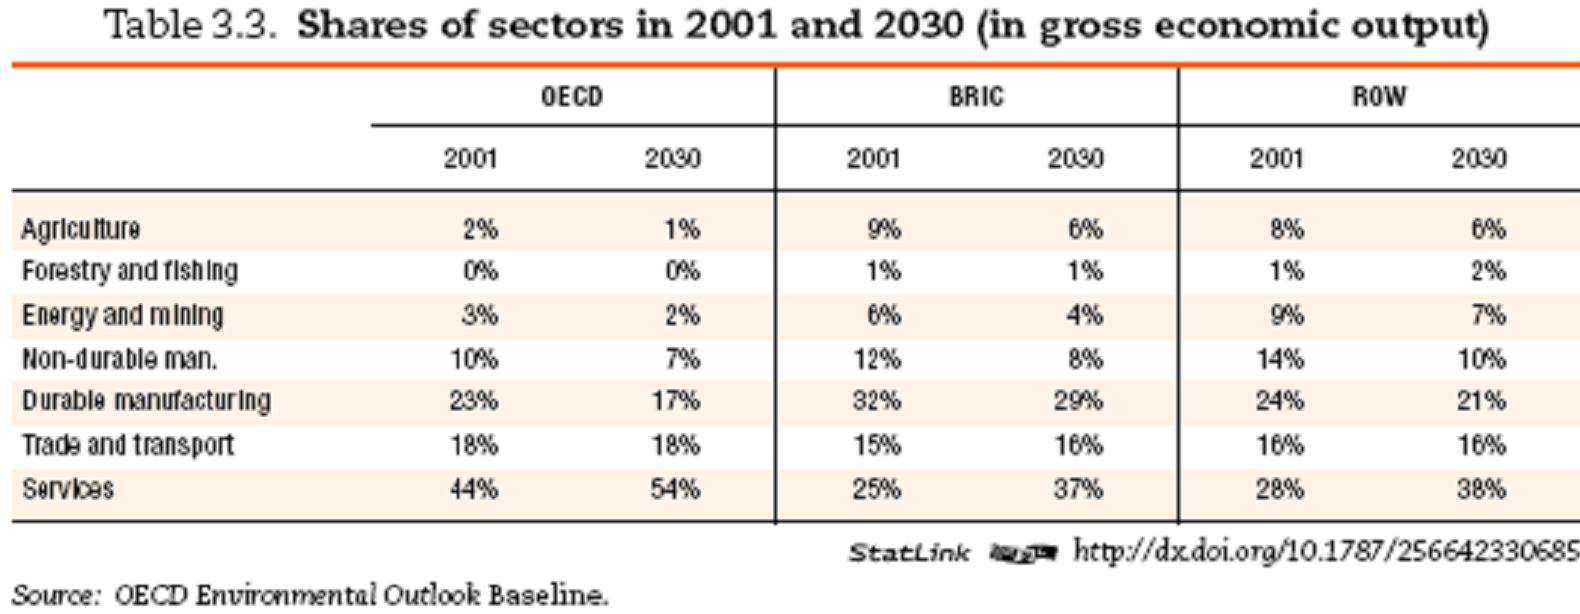 CONTEXTO MUNDIAL Estima-se que o crescimento do PIB Mundial seja de 2,8% entre 2005 e 2030.